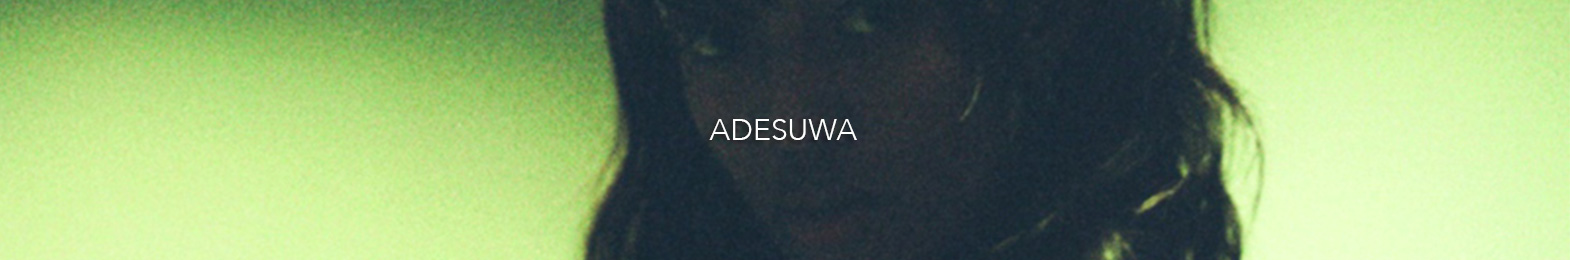 Adesuwa